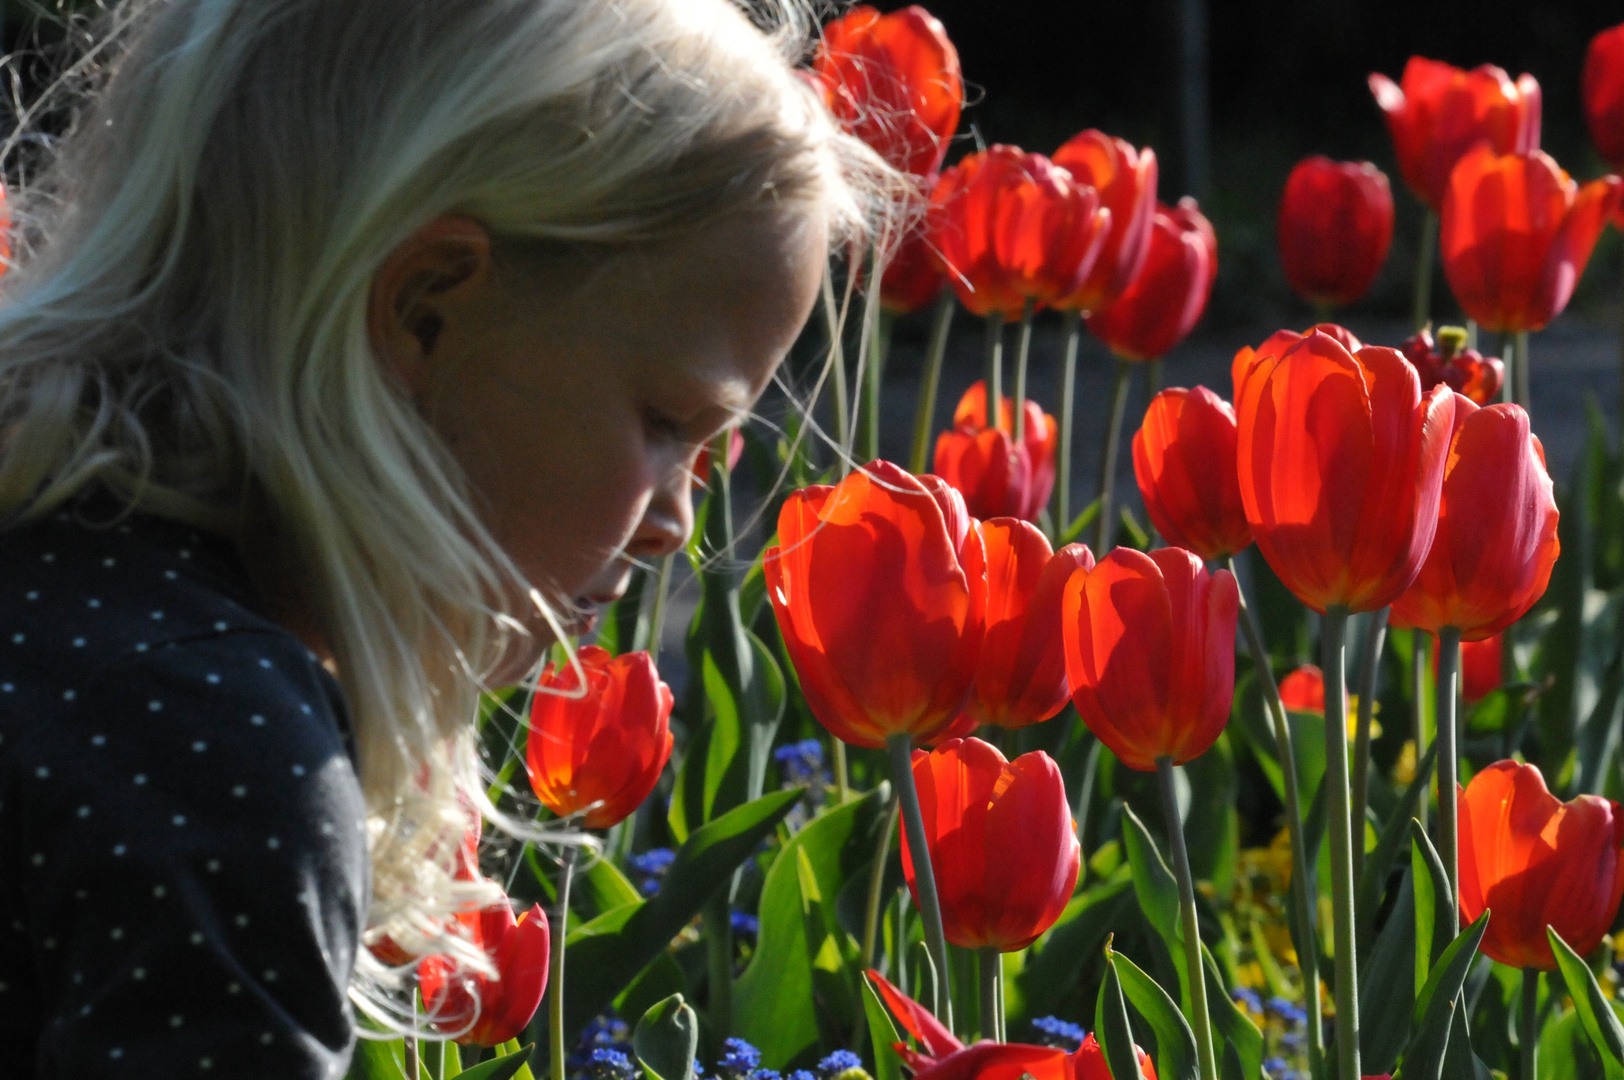 Mädchen mit Tulpen